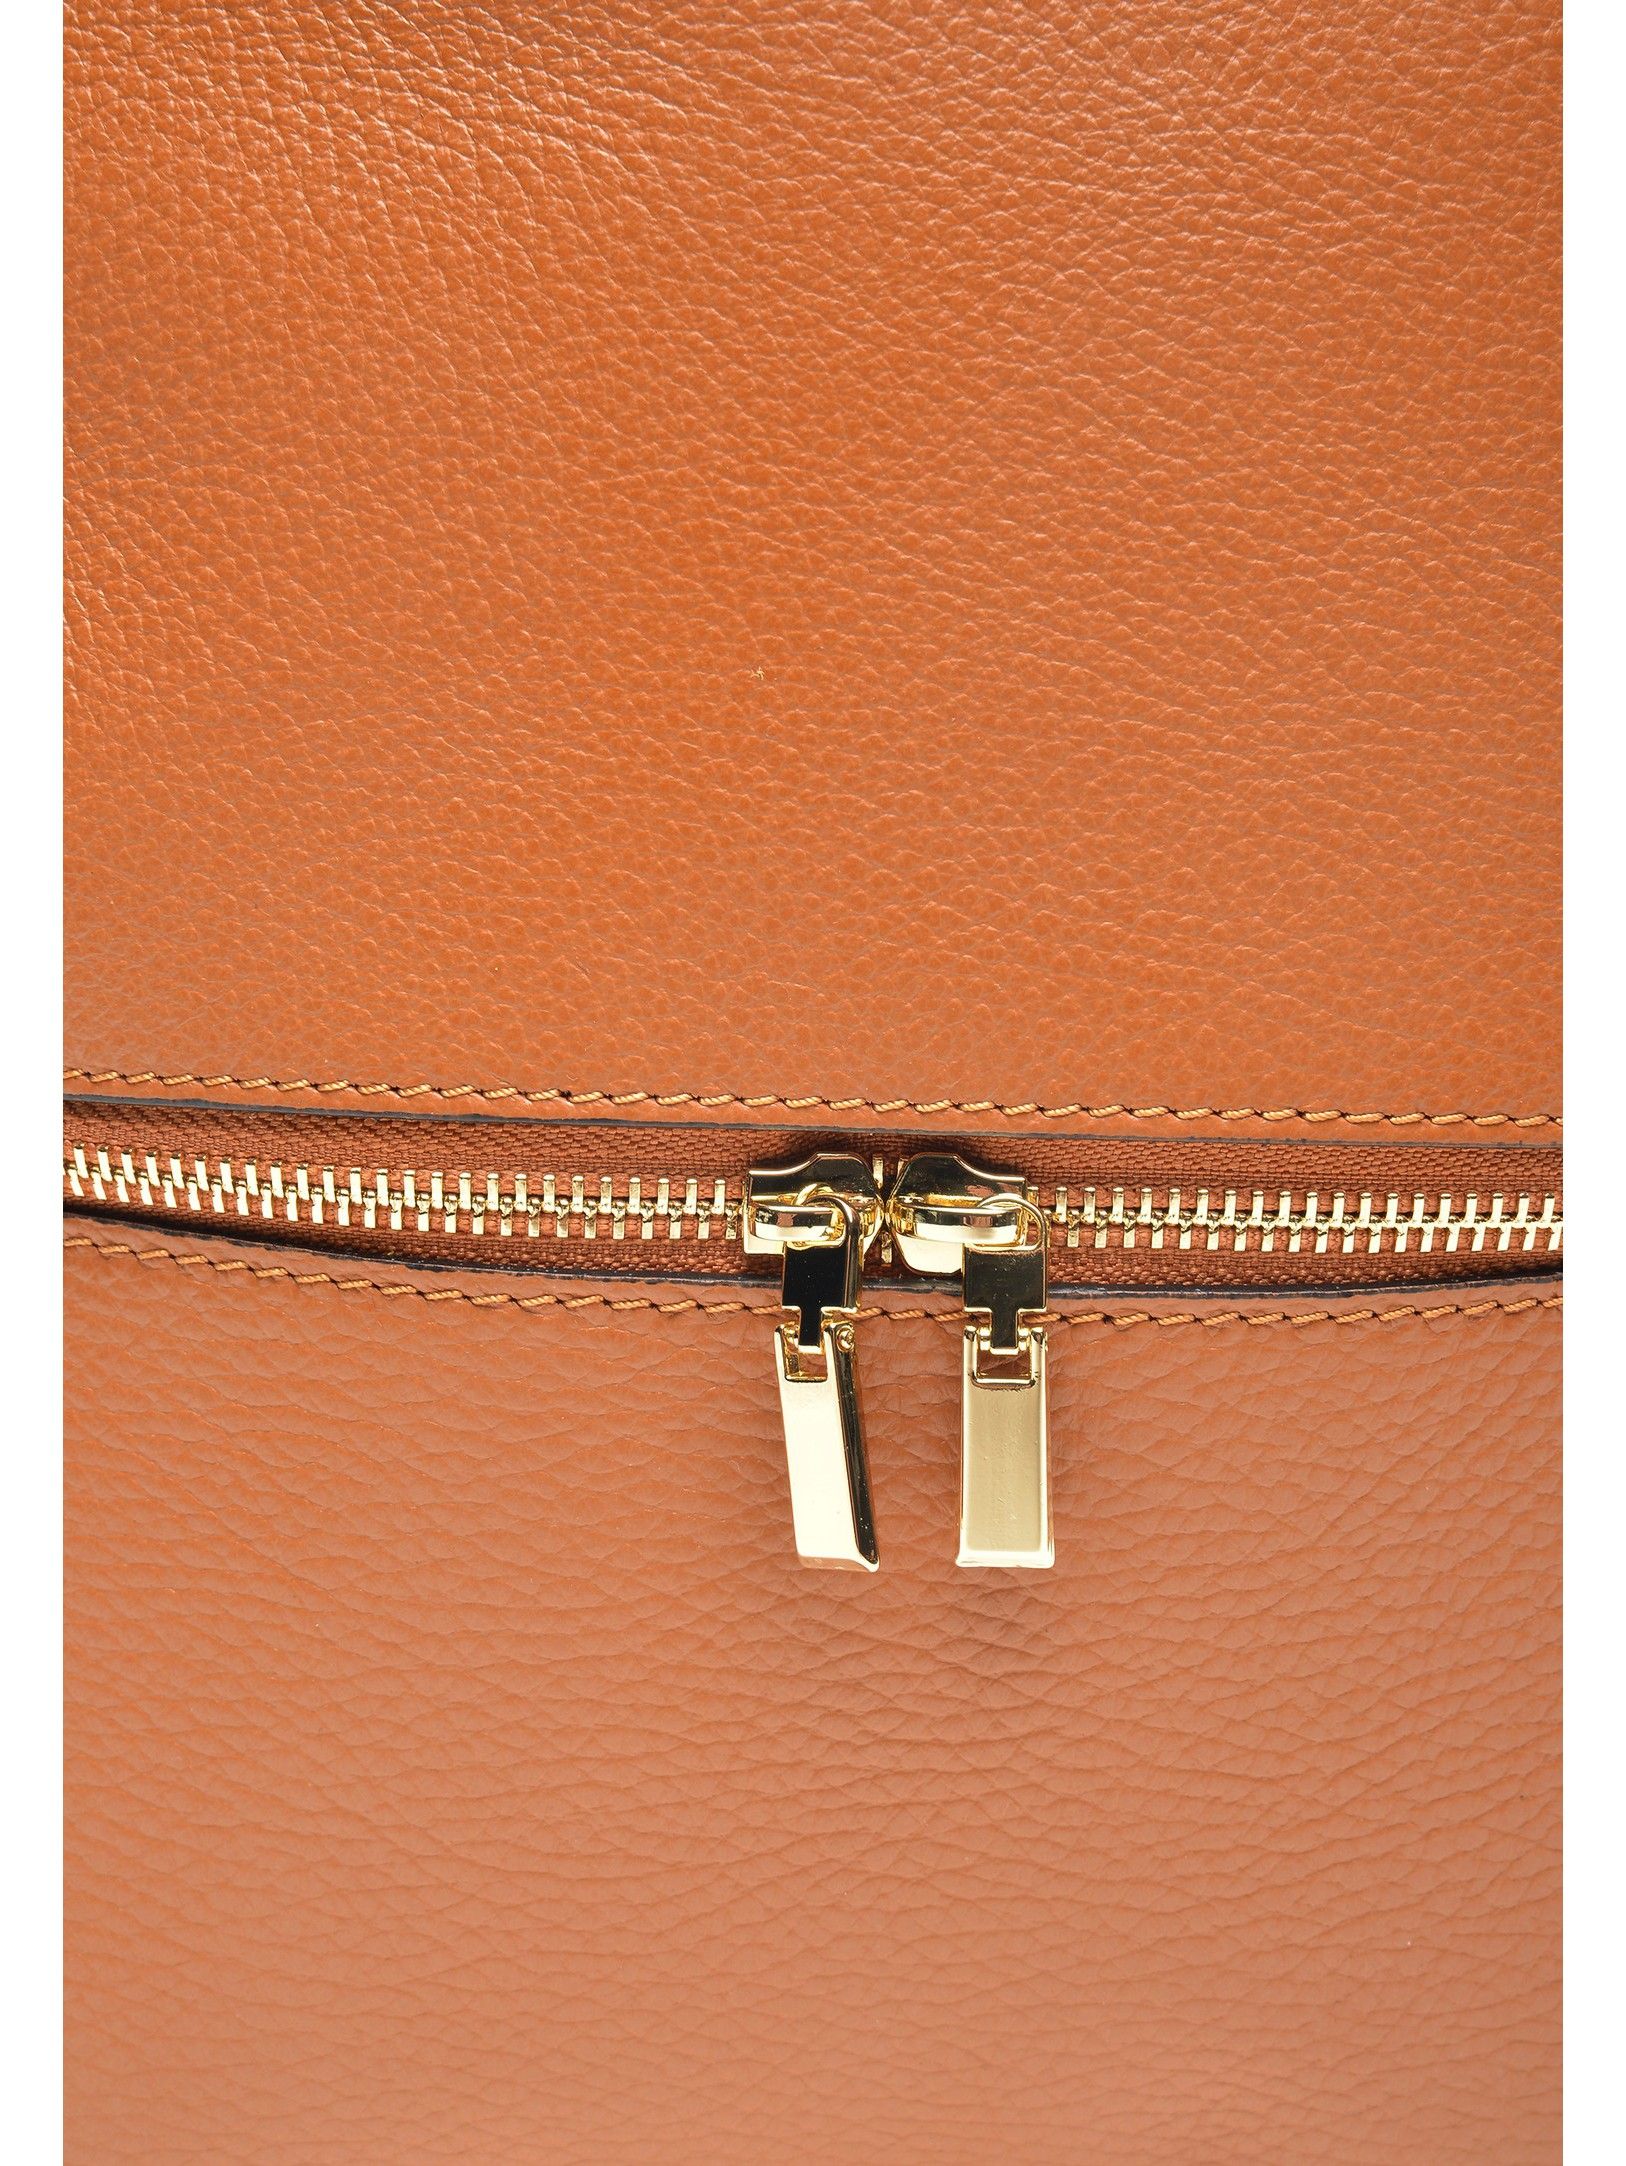 Backpack
100% cow leather
Top zip closure
Front zip pocket
Dimensions (L) 29x23x10 cm
Handle: 19.5 cm
Shoulder strap: 80cm x 4